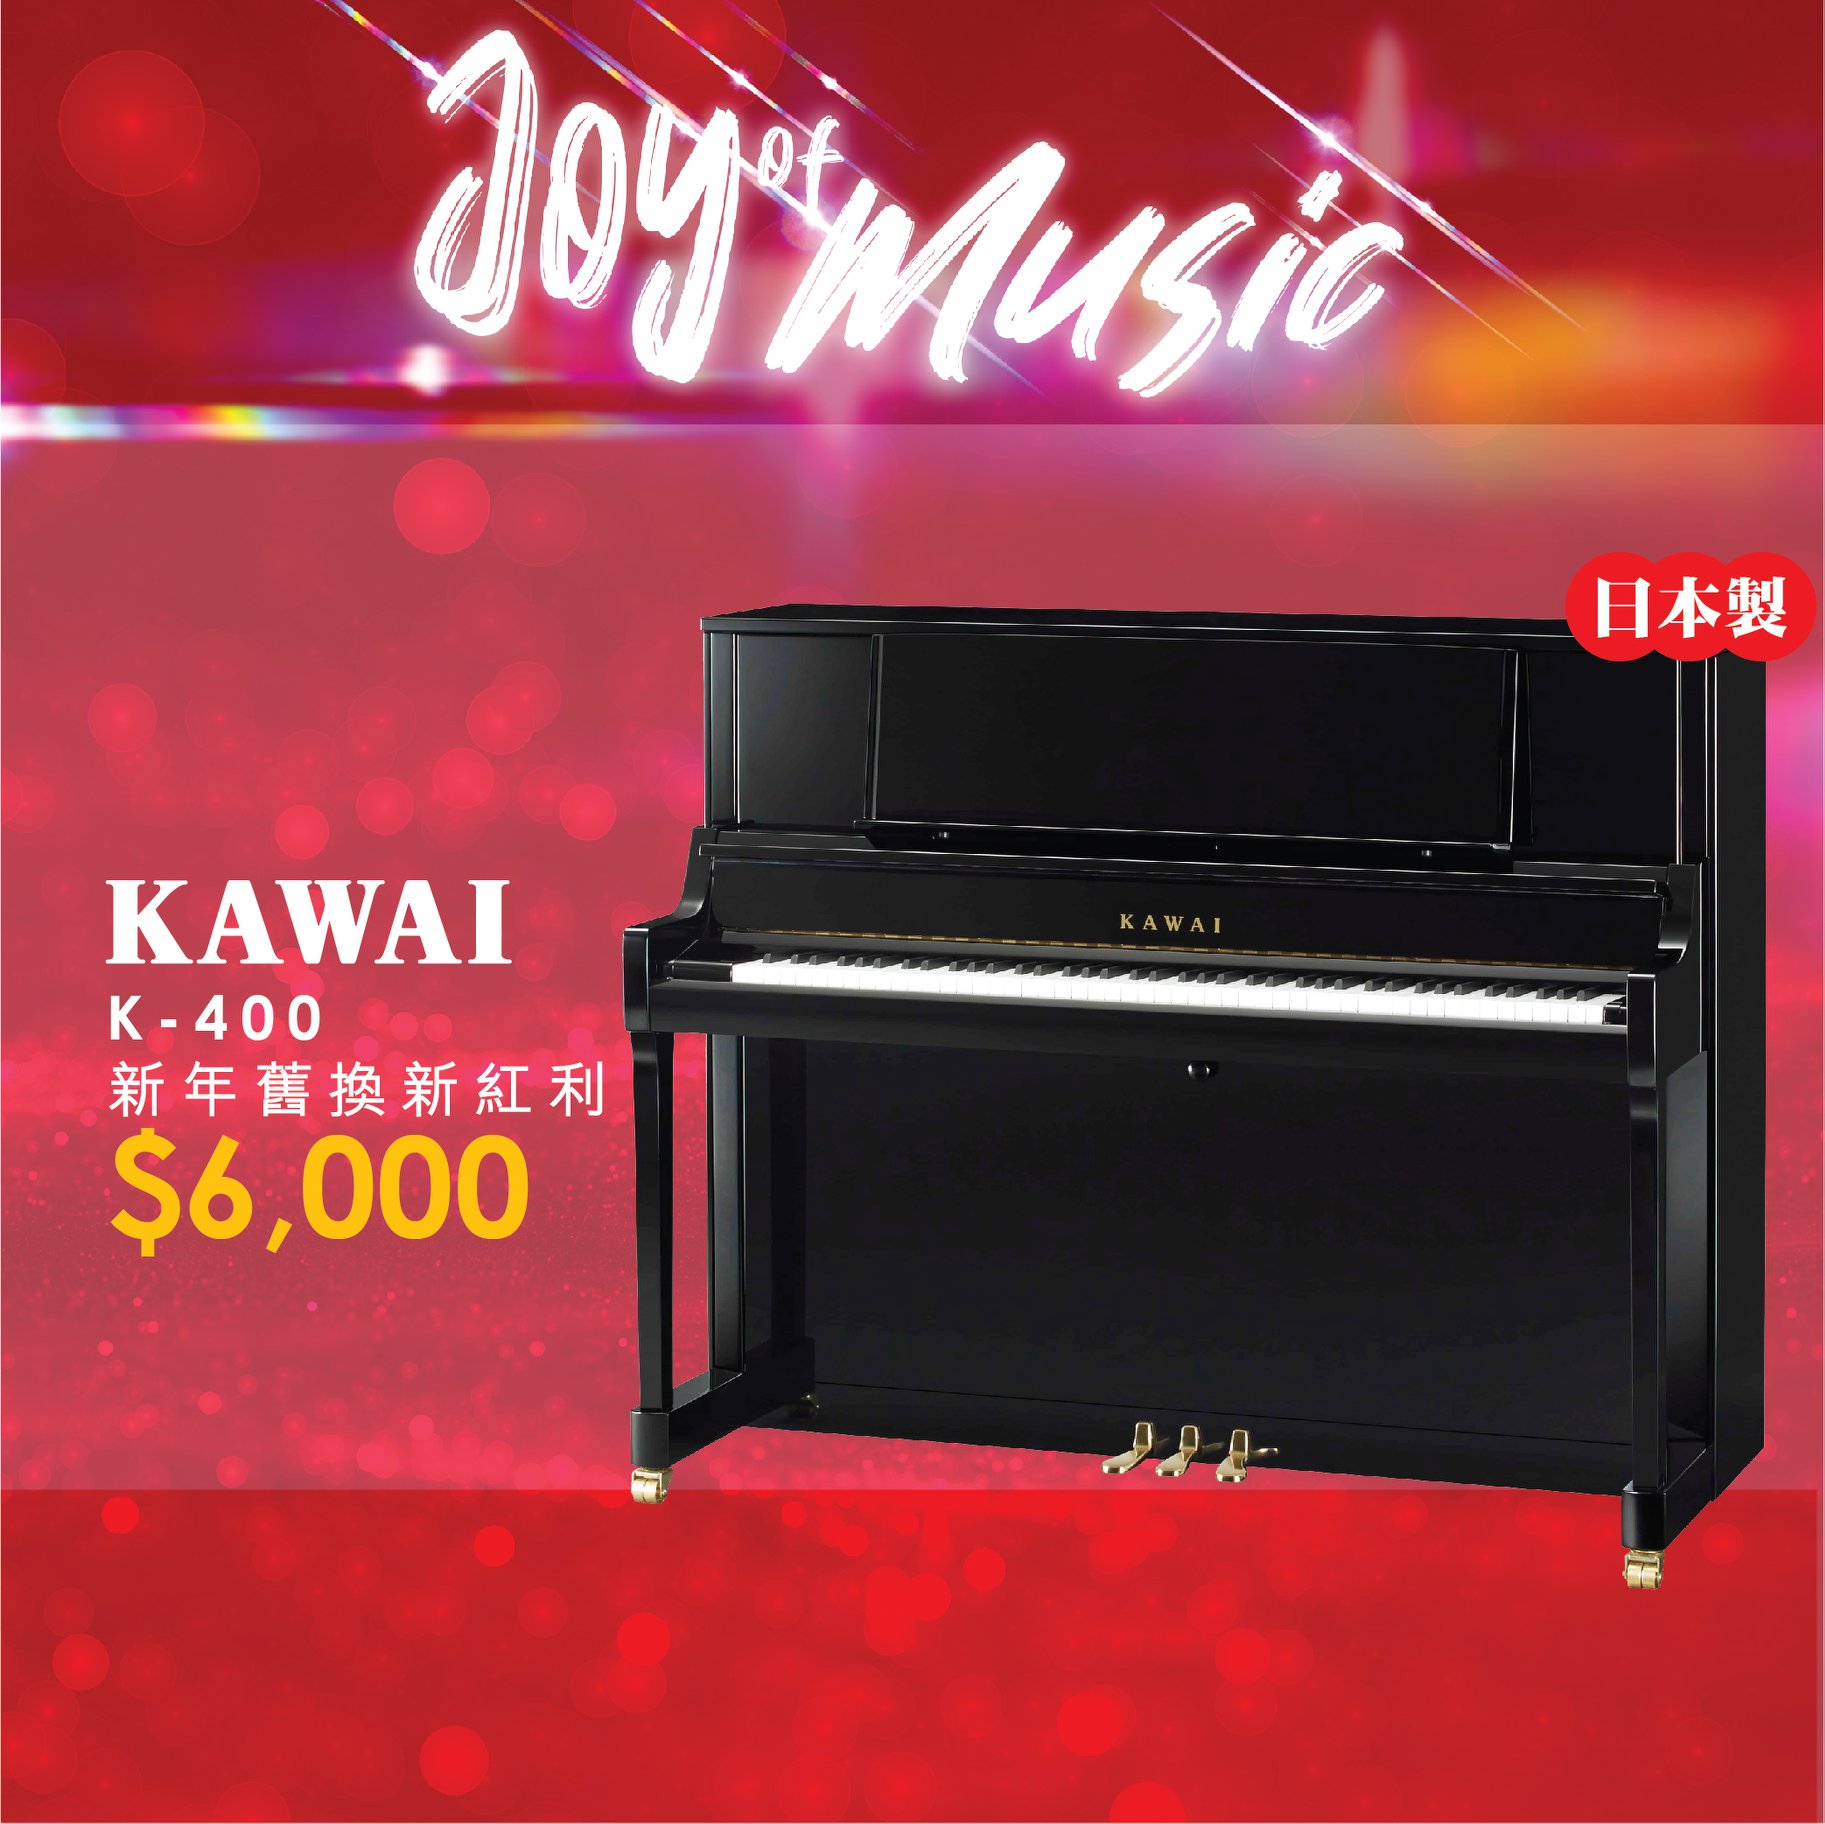 【✨日本製KAWAI 新年優惠✨】 日本製KAWAI K-400高身立式琴，依家我地做緊新年舊換新紅利HK$6,000📣📣 🎹三角琴式譜架及緩降鍵盤蓋，比一般121cm高型號有更高性價比...